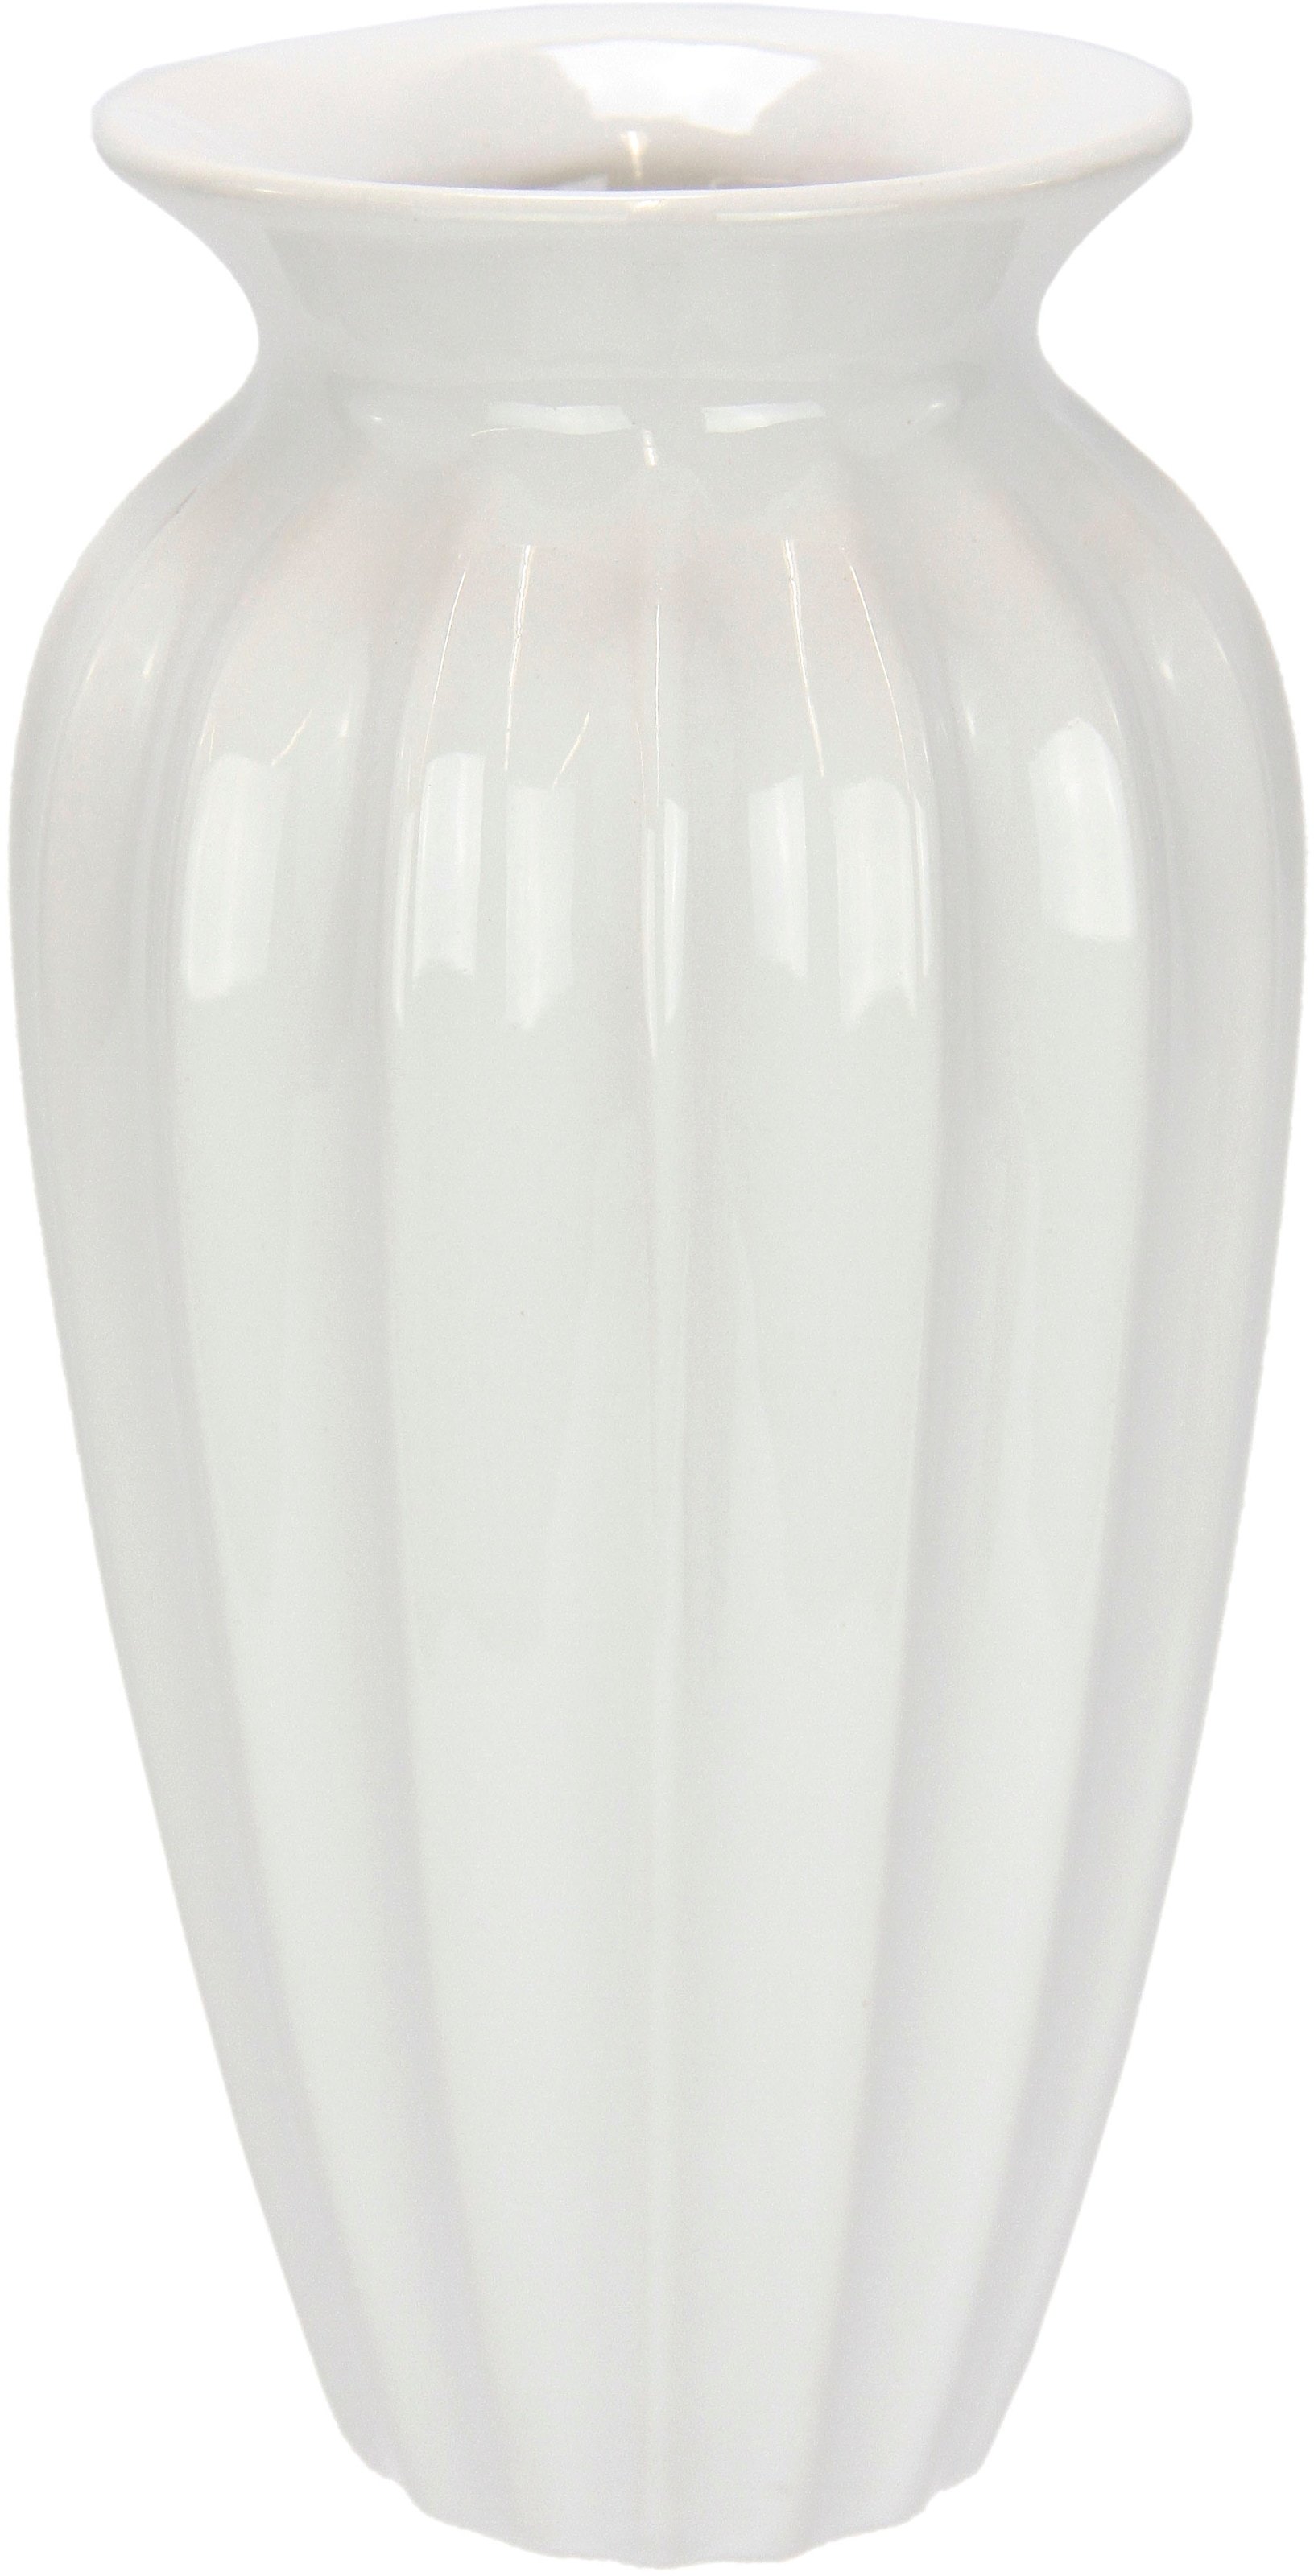 auf Raten Aus bestellen I.GE.A. Dekovase rund groß »Keramik Keramik, Vase«,